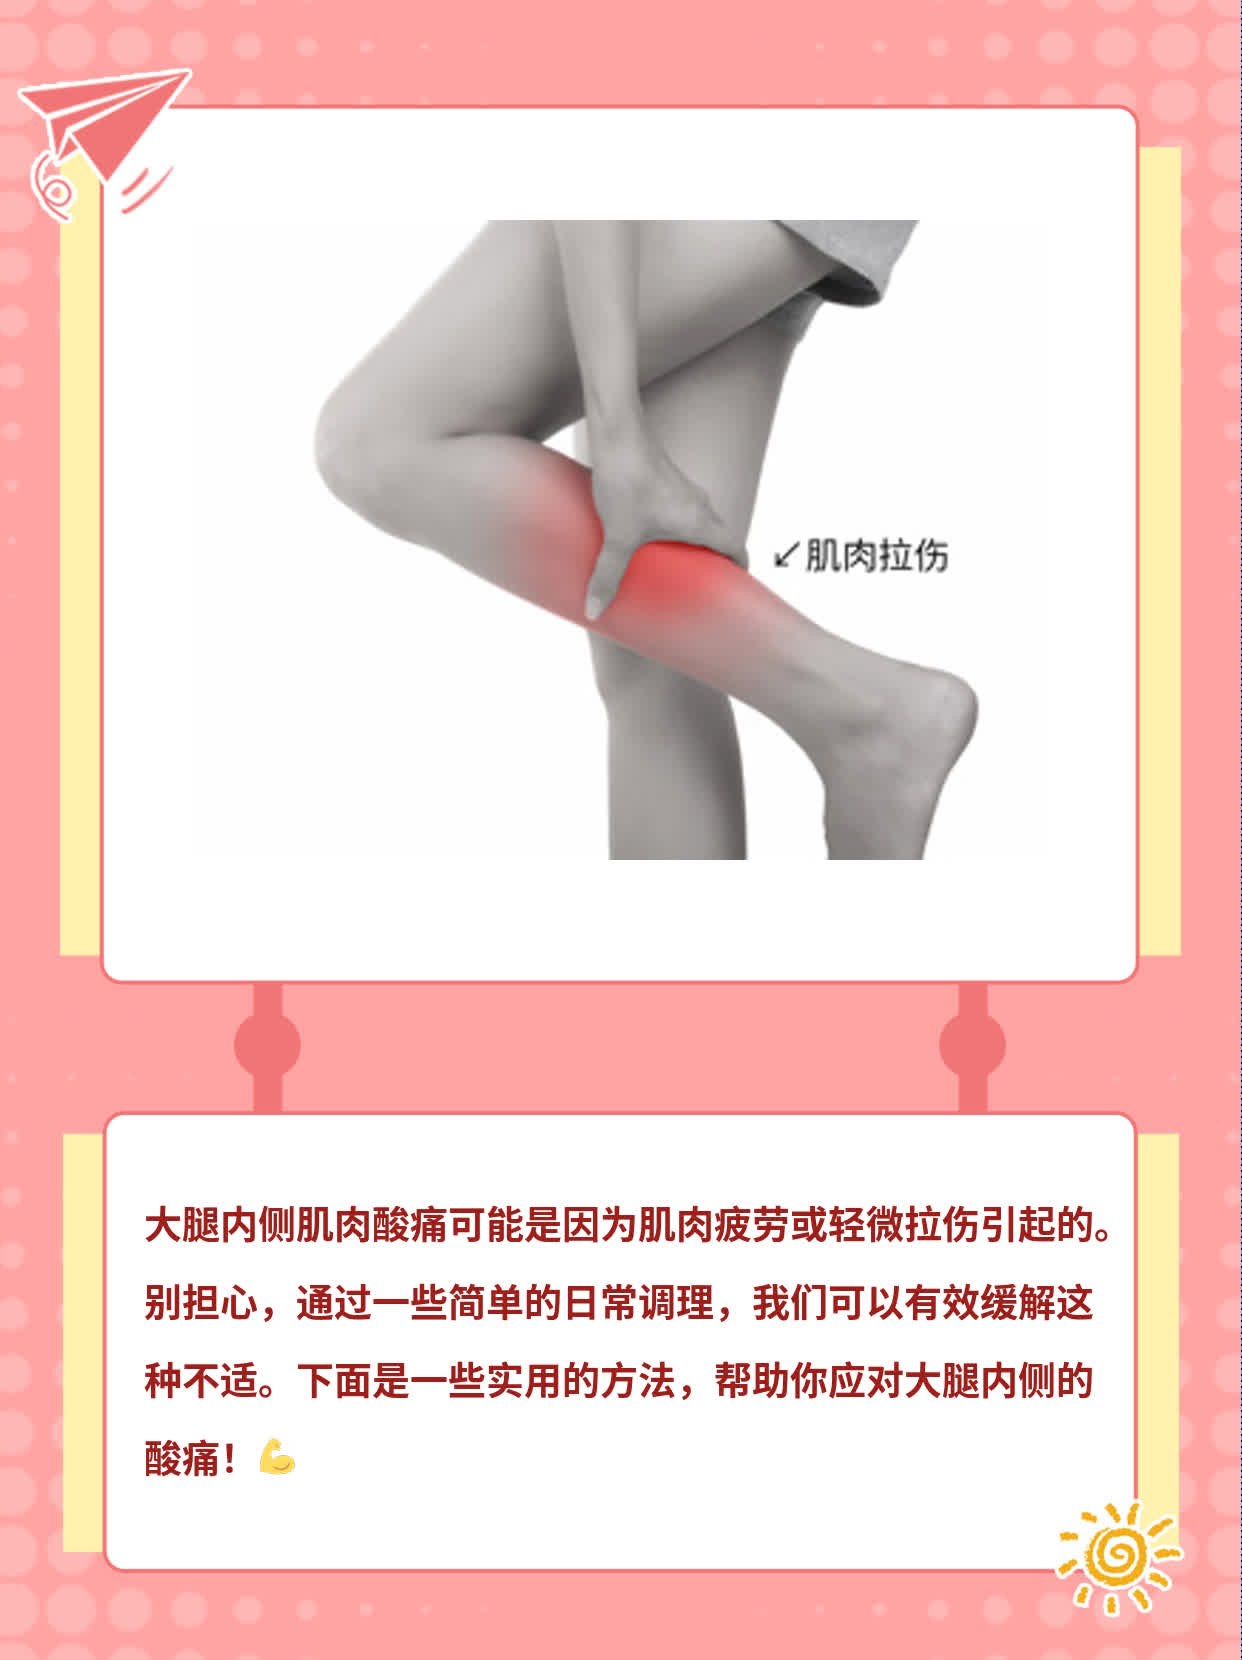 「酸痛在两腿之间」原因探秘：解决大腿内侧不适！